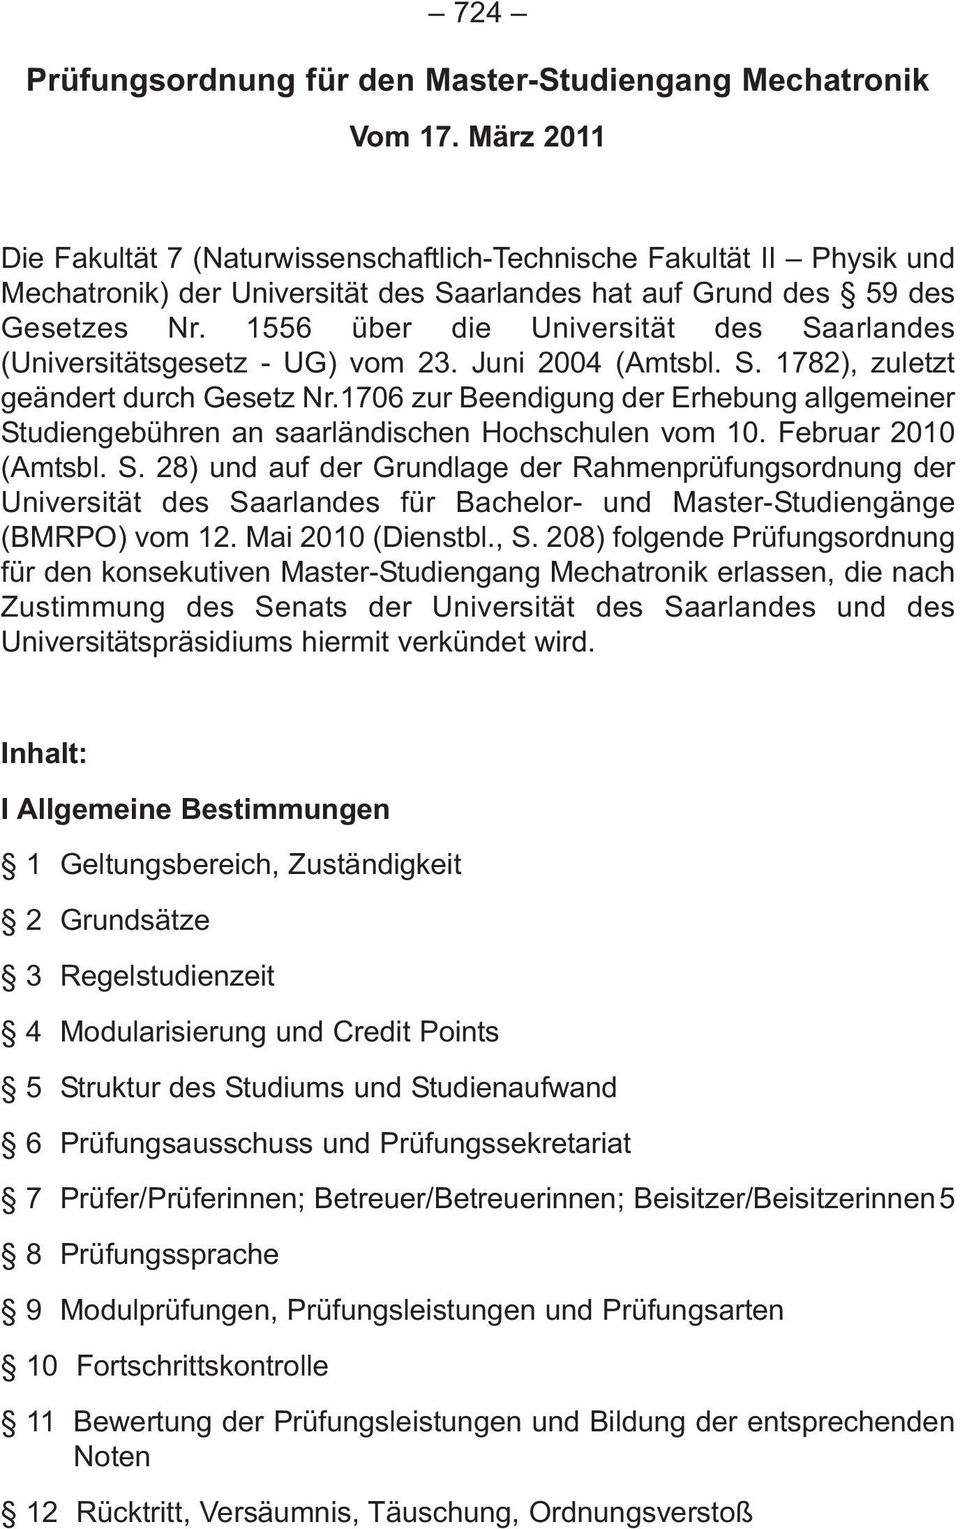 1556 über die Universität des Saarlandes (Universitätsgesetz - UG) vom 23. Juni 2004 (Amtsbl. S. 1782), zuletzt geändert durch Gesetz Nr.